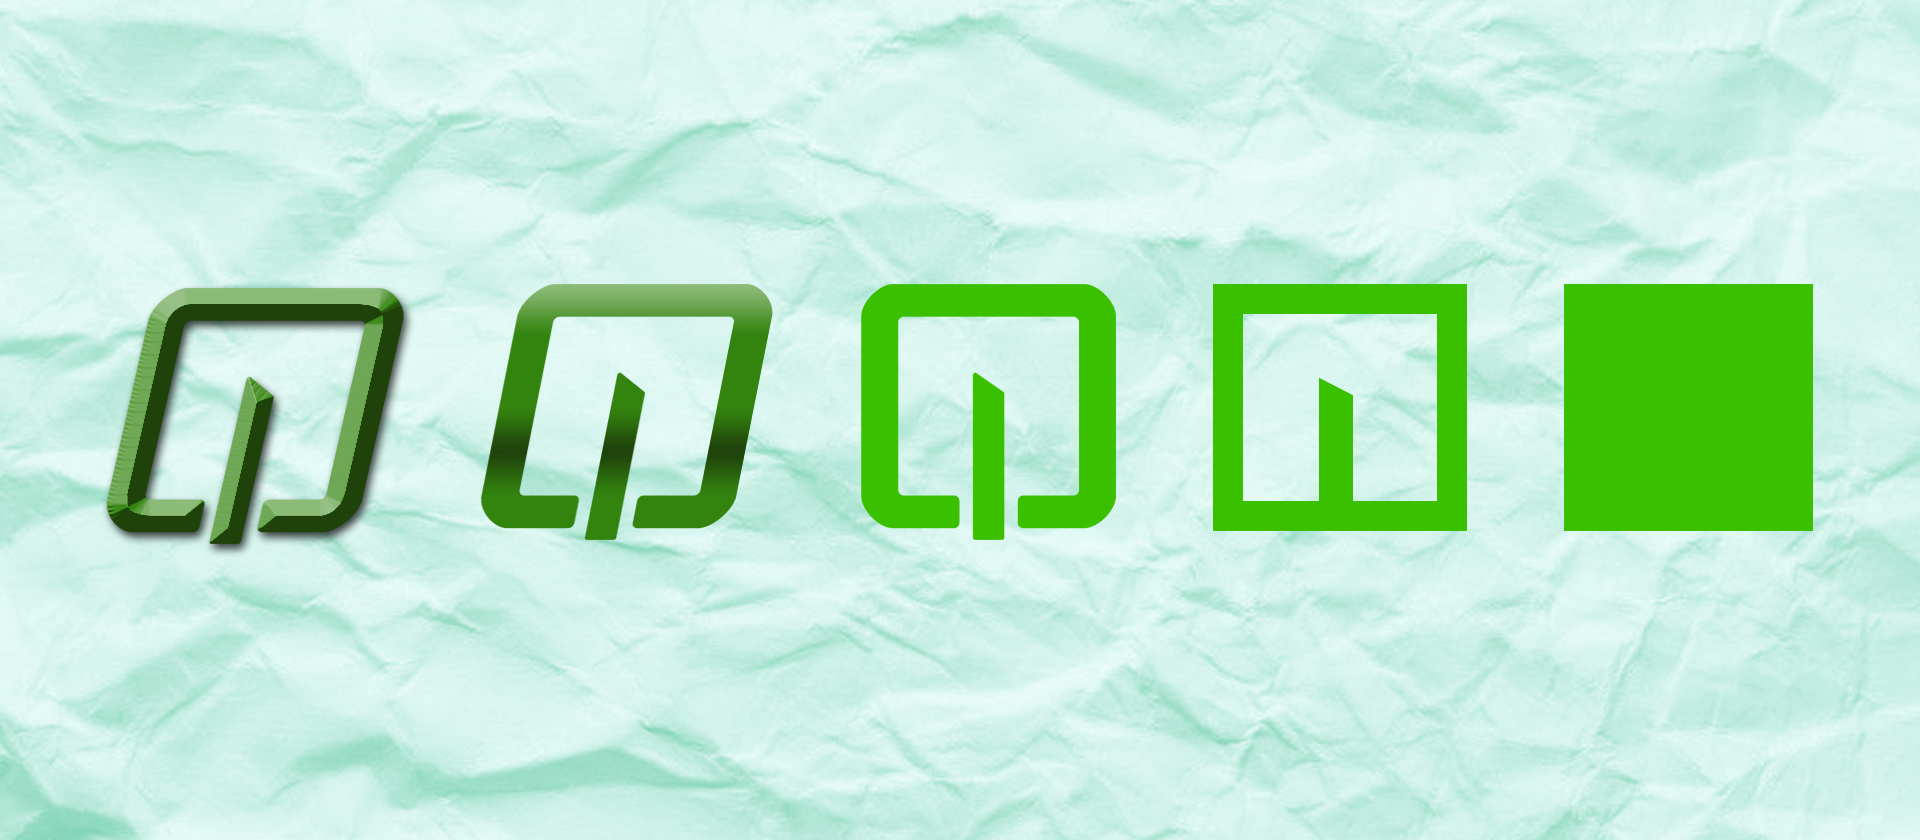 95 Letter m logo design inspiration ideas  letter m logo, logo design  inspiration, logo design